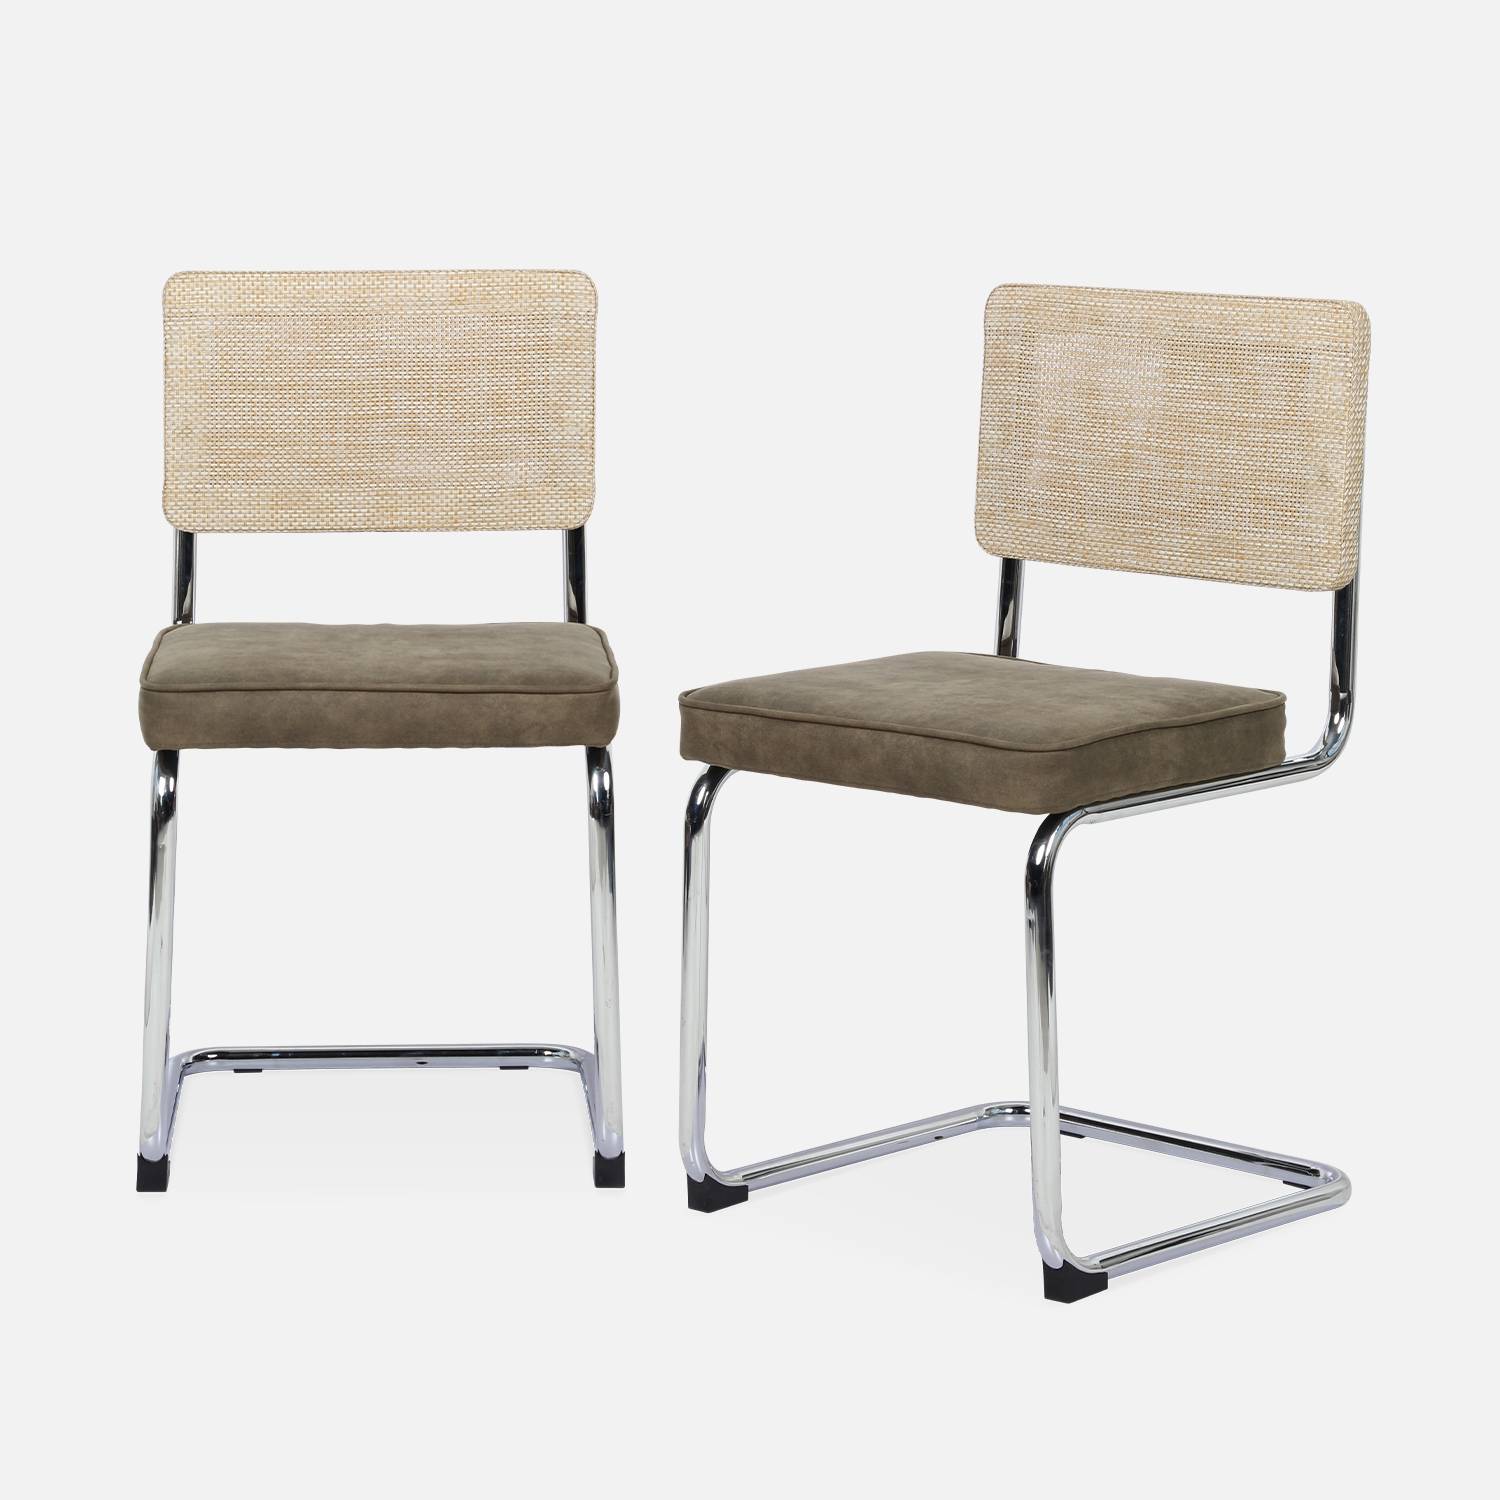 2 cadeiras cantilever - Maja - tecido caqui e resina com efeito rattan, 46 x 54,5 x 84,5 cm Photo4